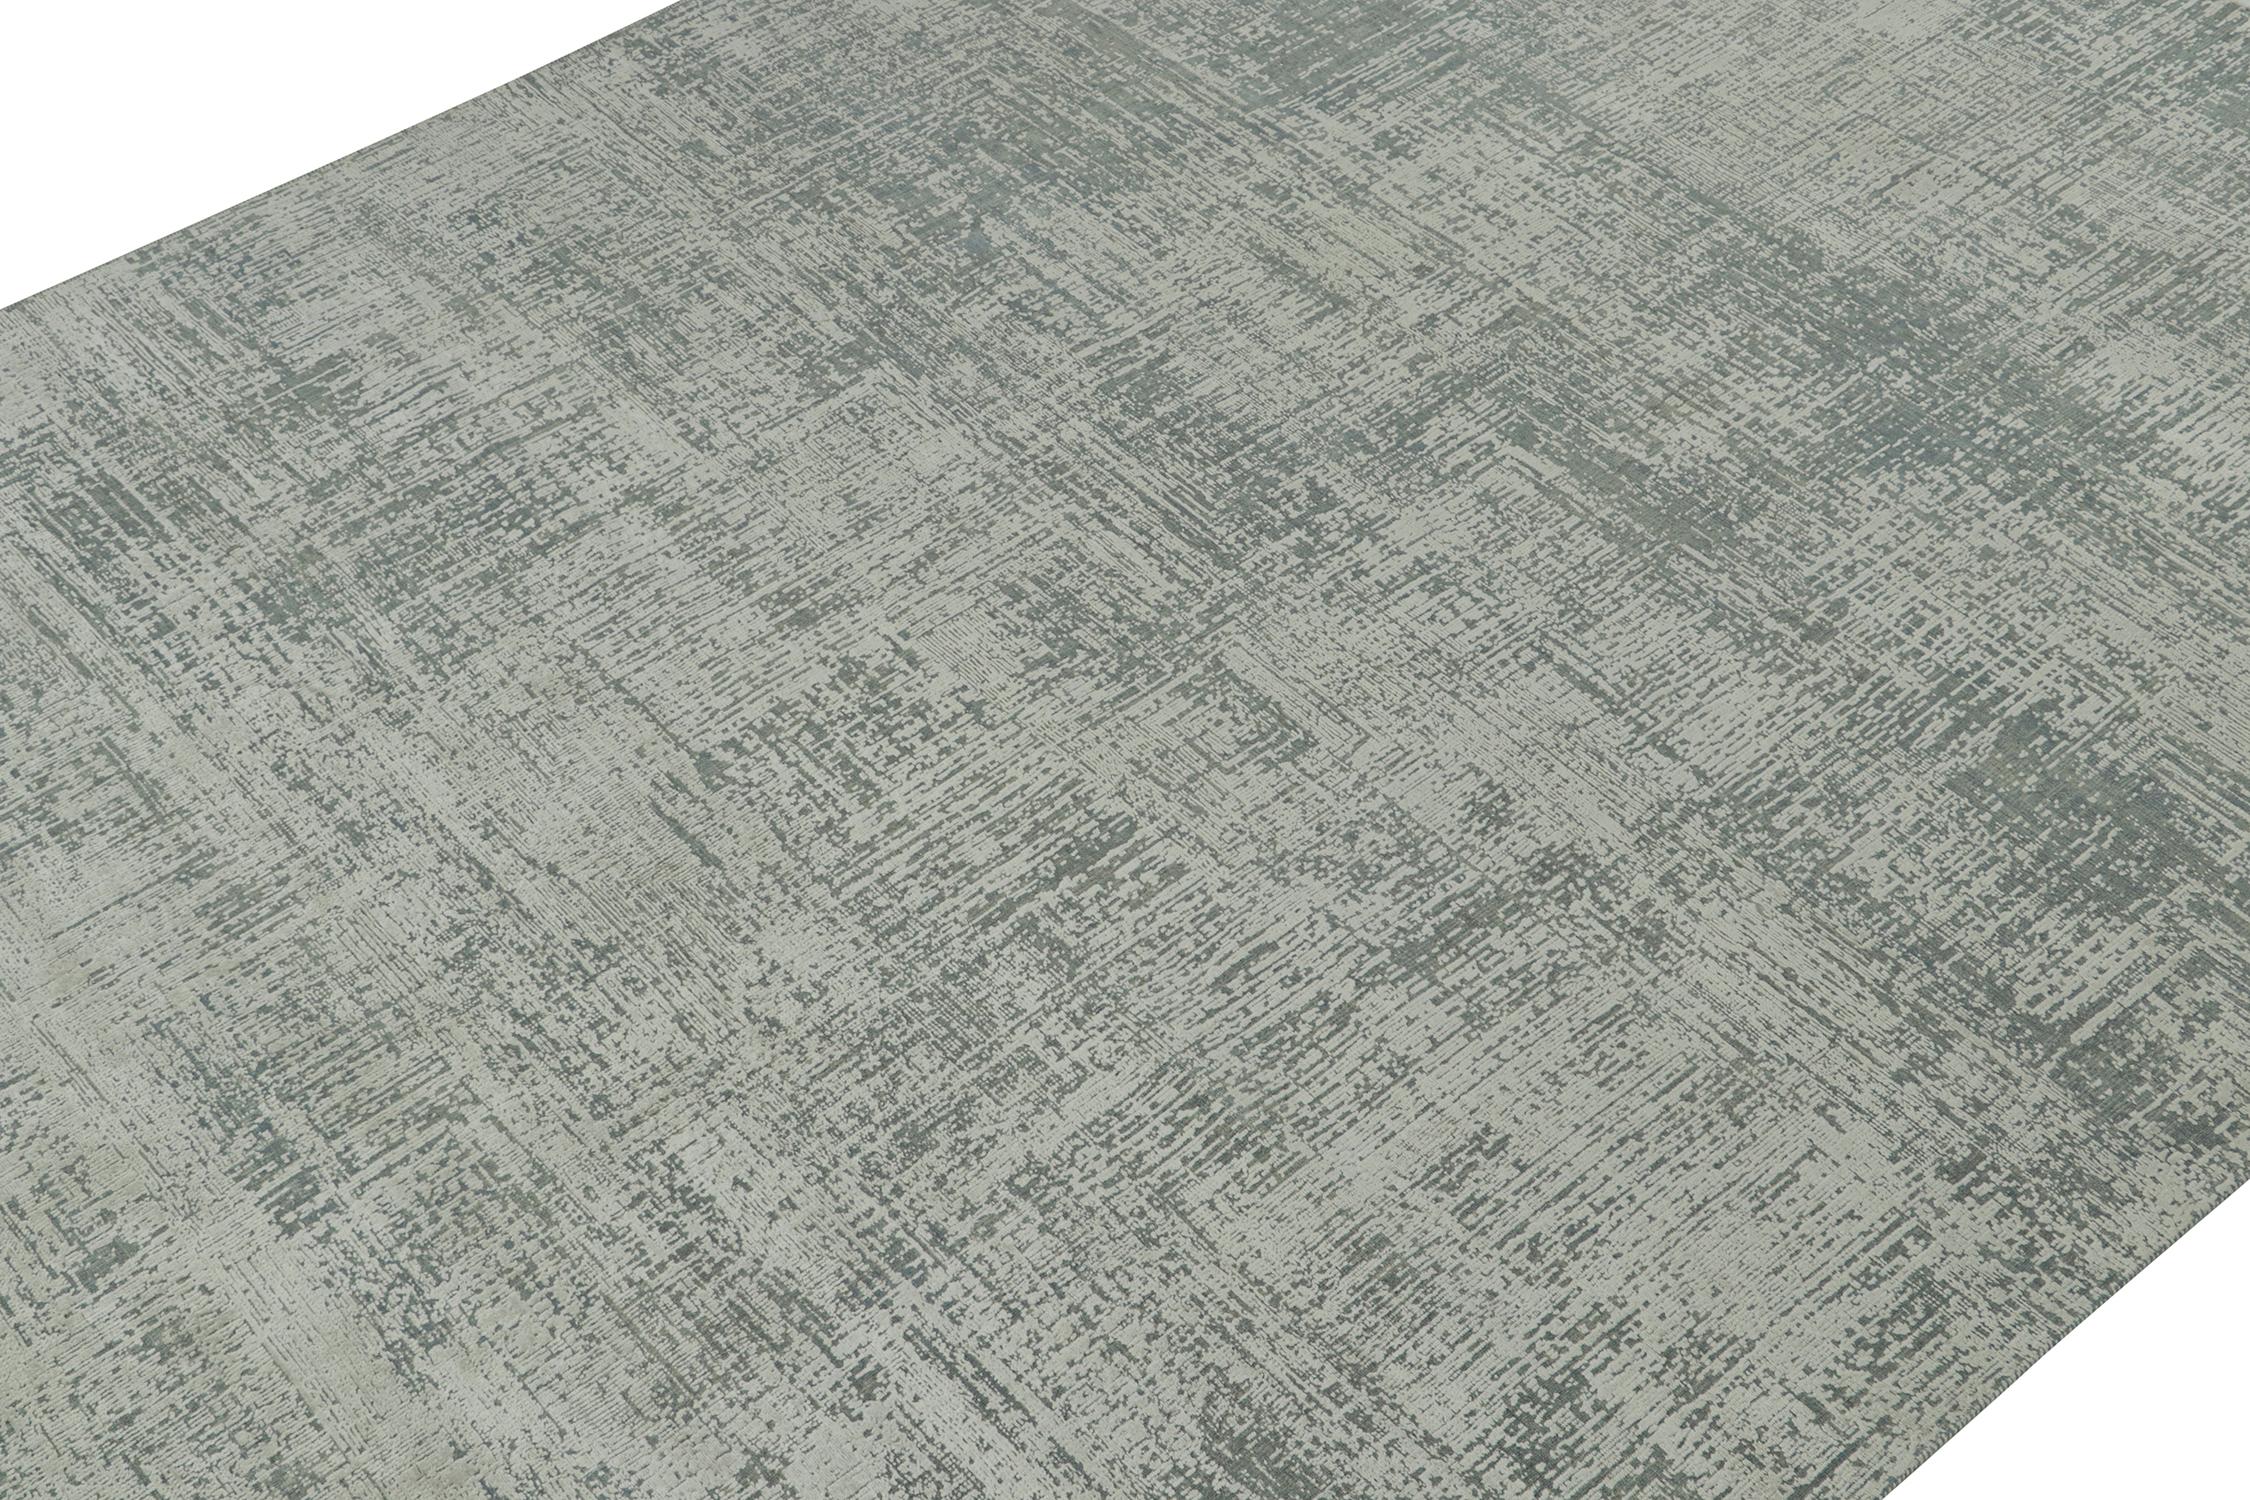 Indien Rug & Kilim's Abstract Rug in Grey and Stone Blue Geometric Pattern (tapis abstrait à motifs géométriques gris et bleu pierre) en vente